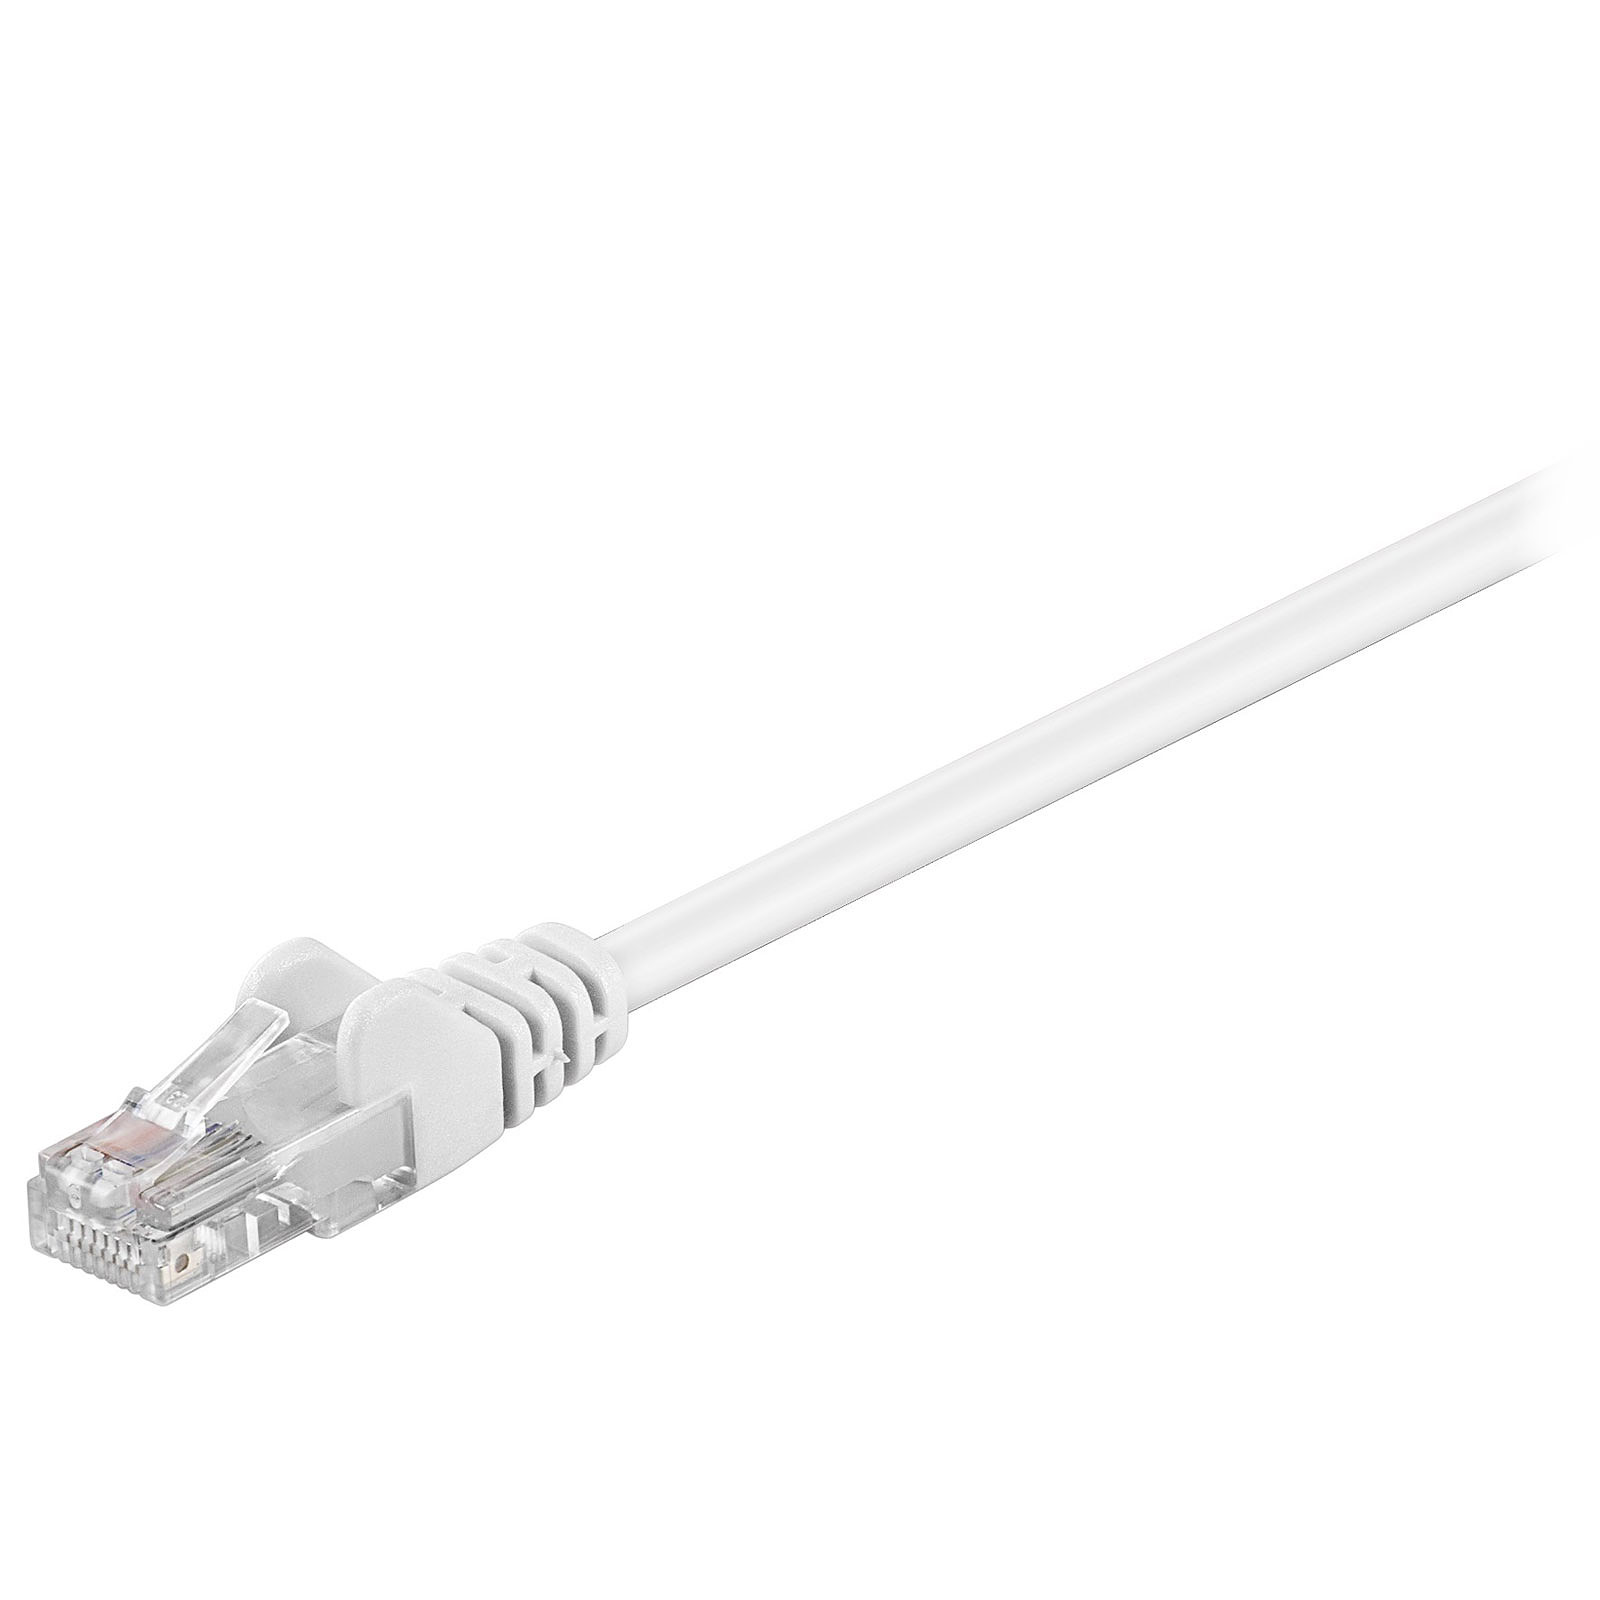 Cable RJ45 categorie 5e U/UTP 0.15 m (Blanc) - Cable RJ45 Generique